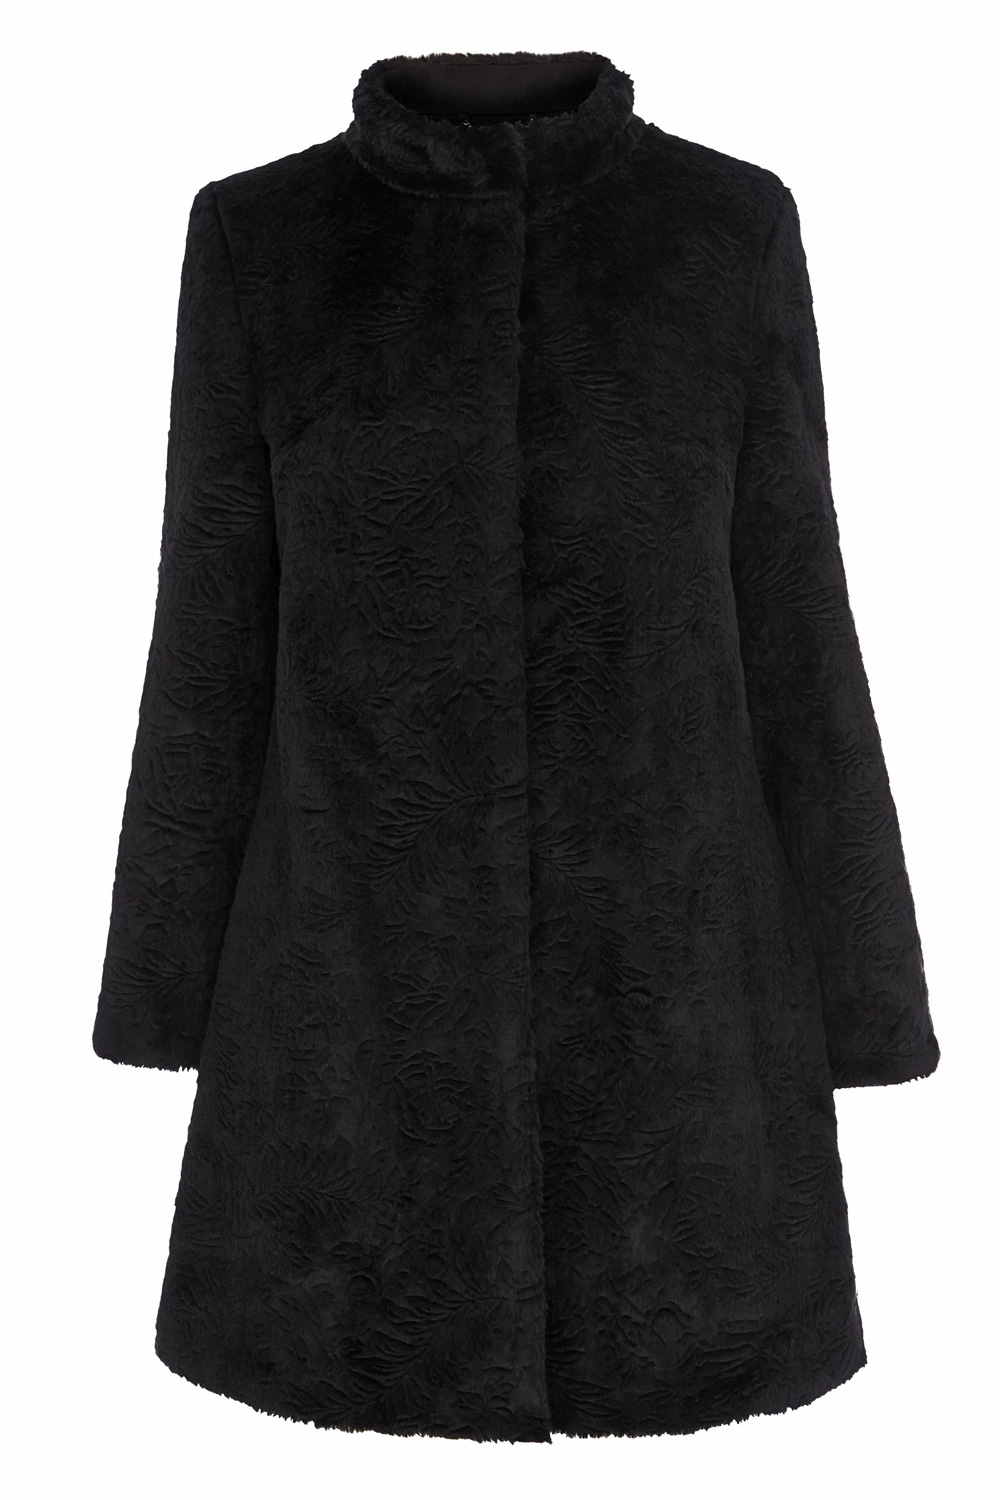 Coast Ottawa Faux Fur Coat in Black | Lyst